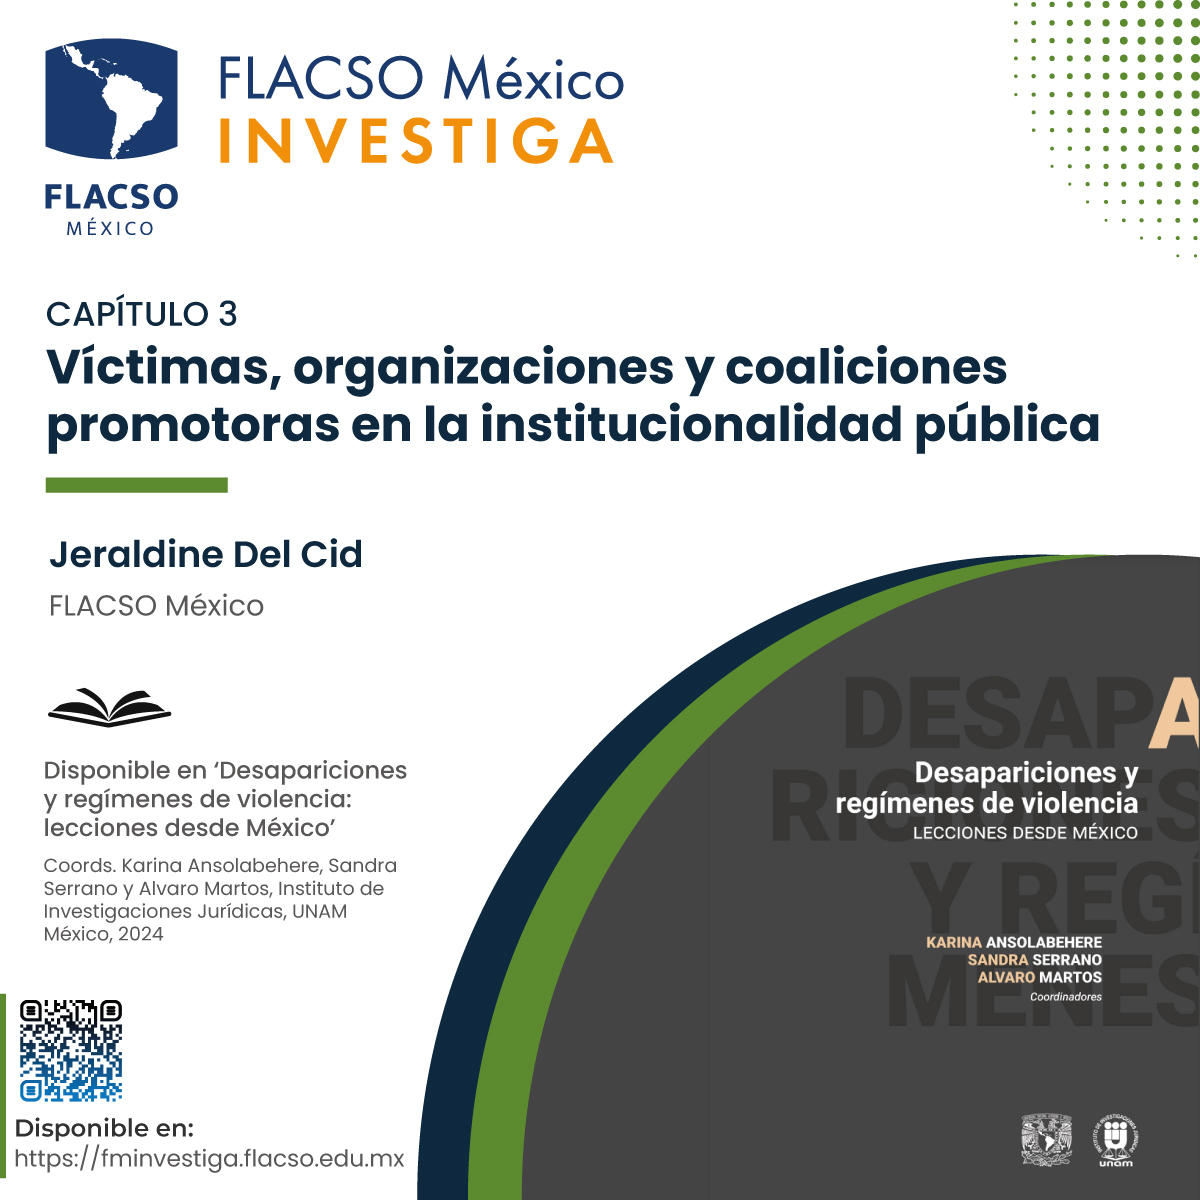 📝 #FLACSOMéxicoInvestiga. @JeraldinedelCid (#FLACSOMéxico) aborda el tema: #Víctimas, organizaciones y coaliciones promotoras en la institucionalidad pública.

Consúltalo en el libro: ‘#Desapariciones y regímenes de #violencia: lecciones desde México’ ➡️ tinyurl.com/58my84a6.